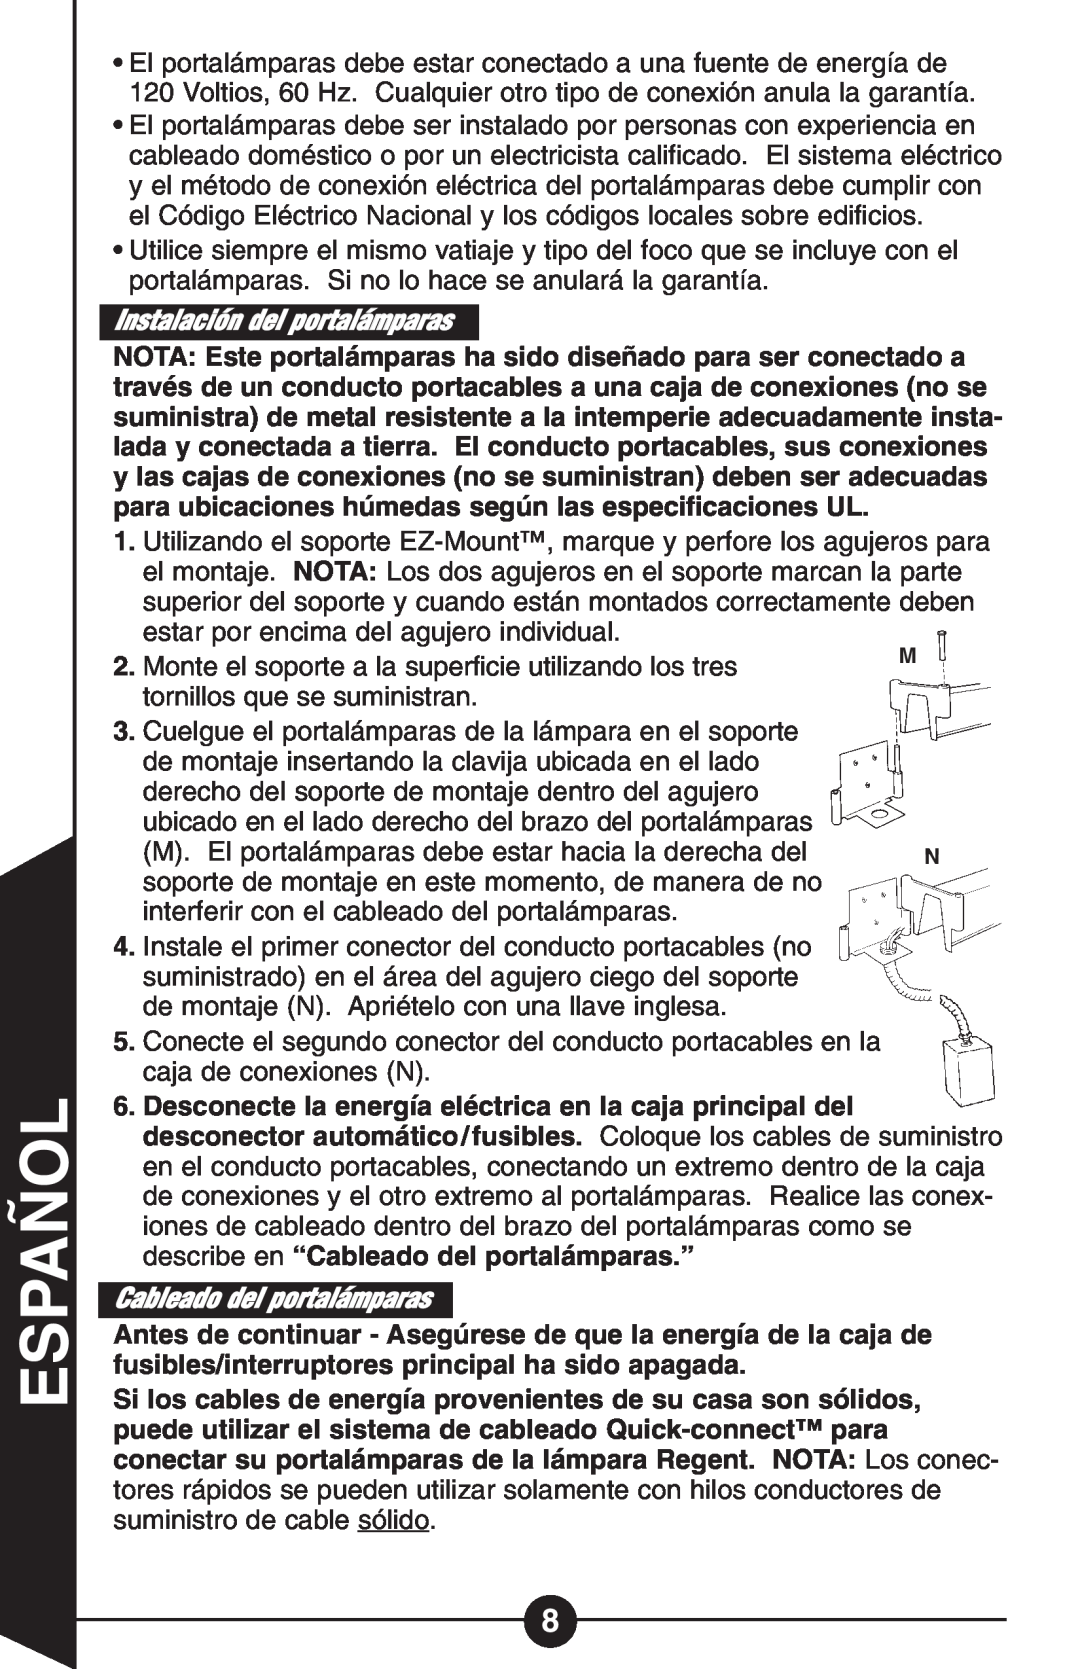 Cooper Lighting GT Series instruction manual Instalación del portalámparas, Cableado del portalámparas, Español 